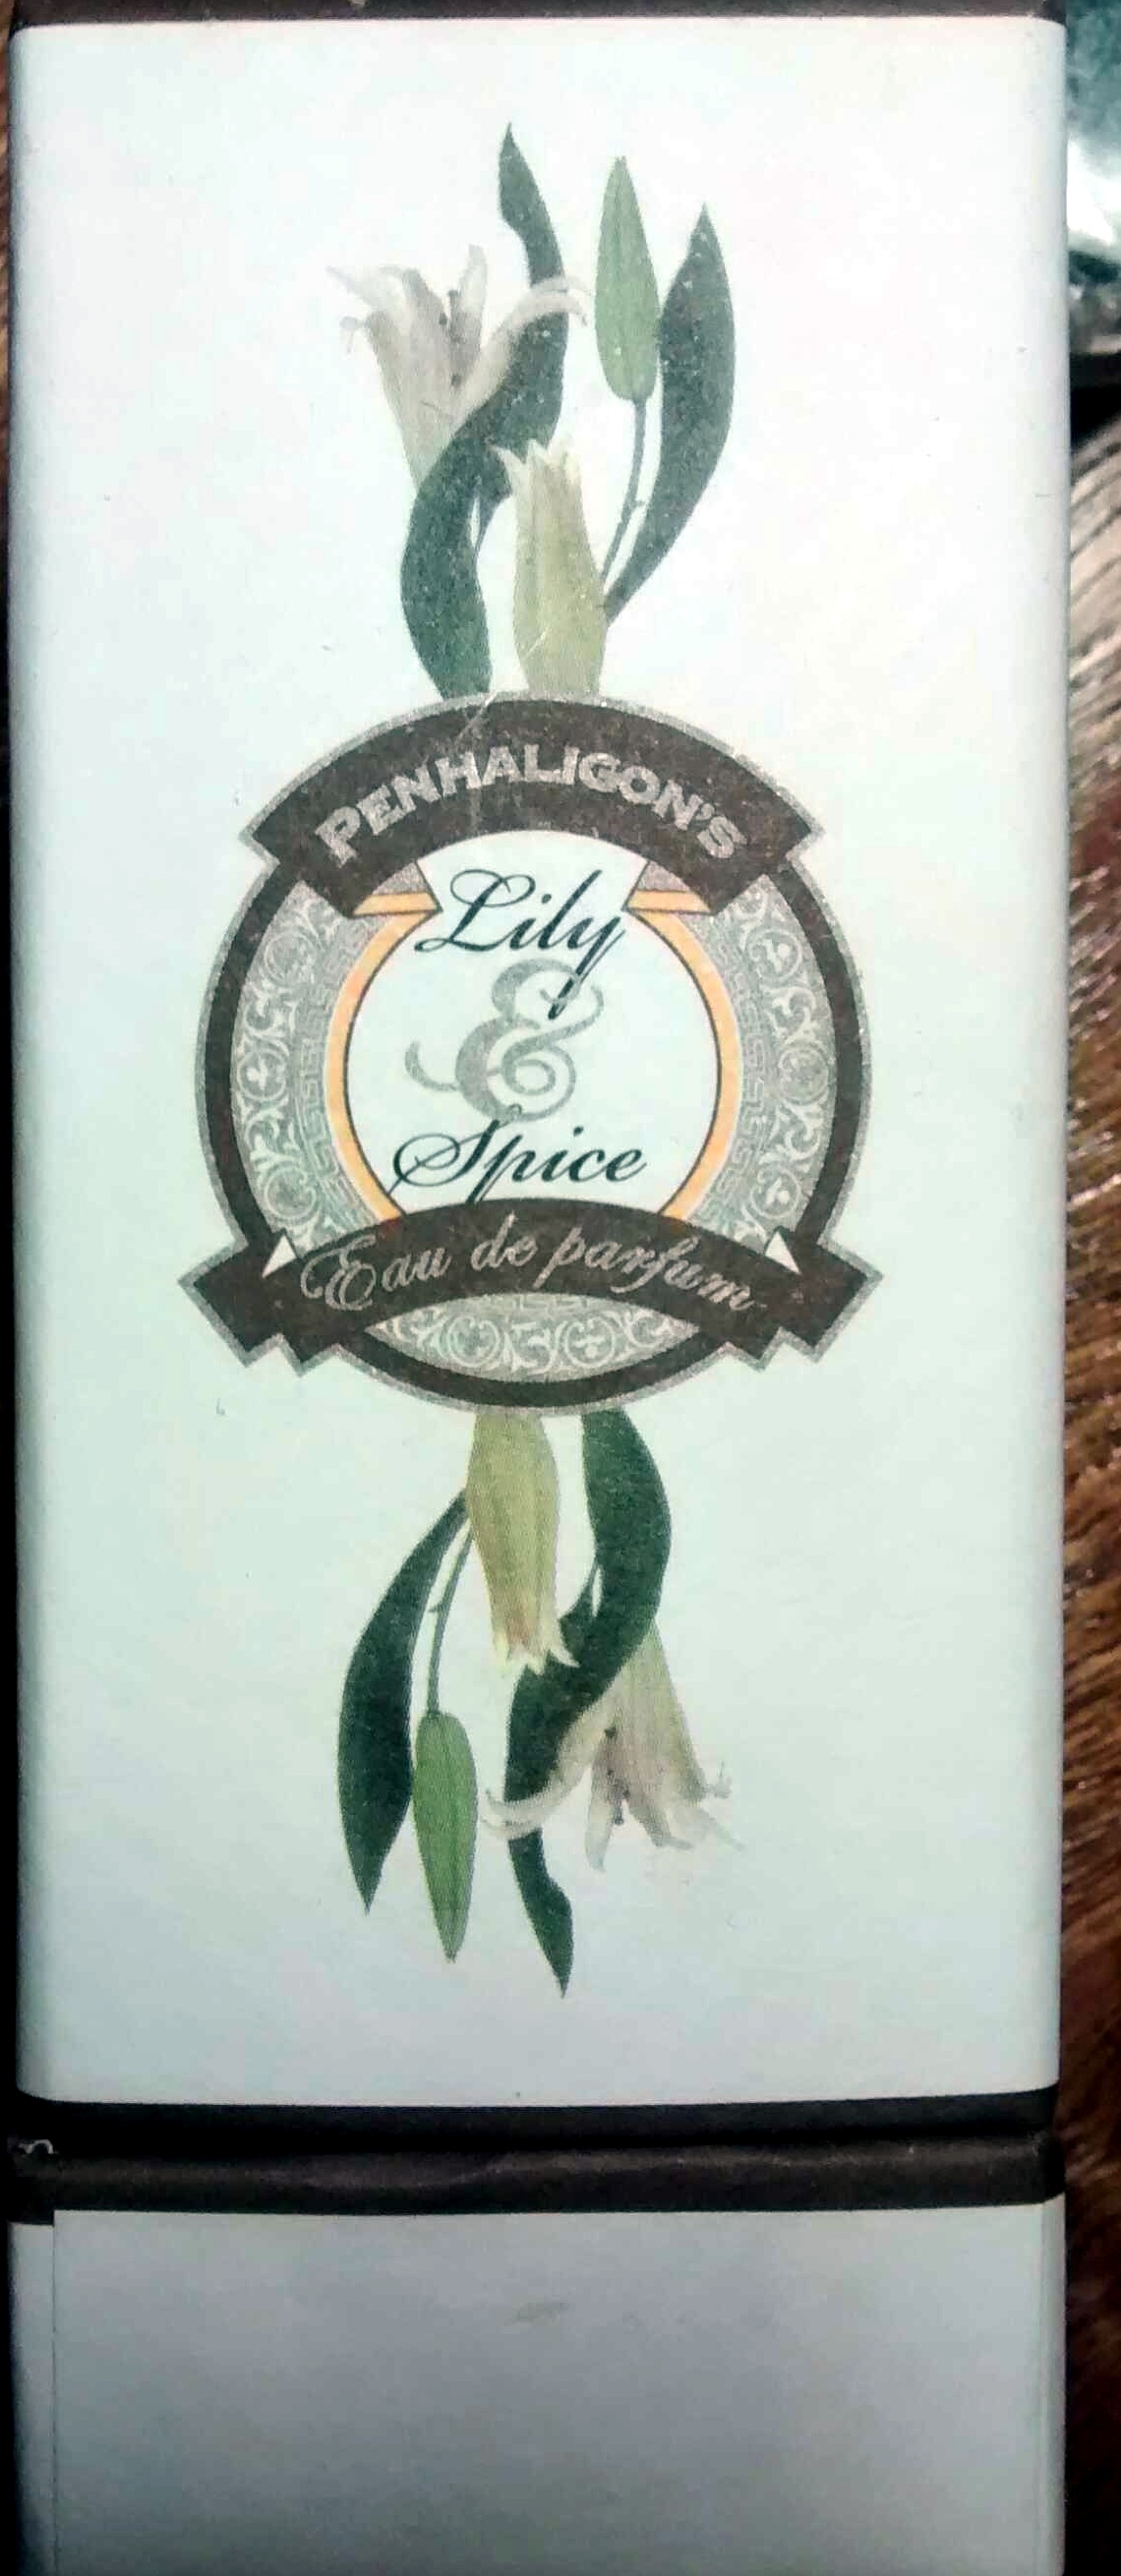 Lily & spice eau de parfum - Product - fr